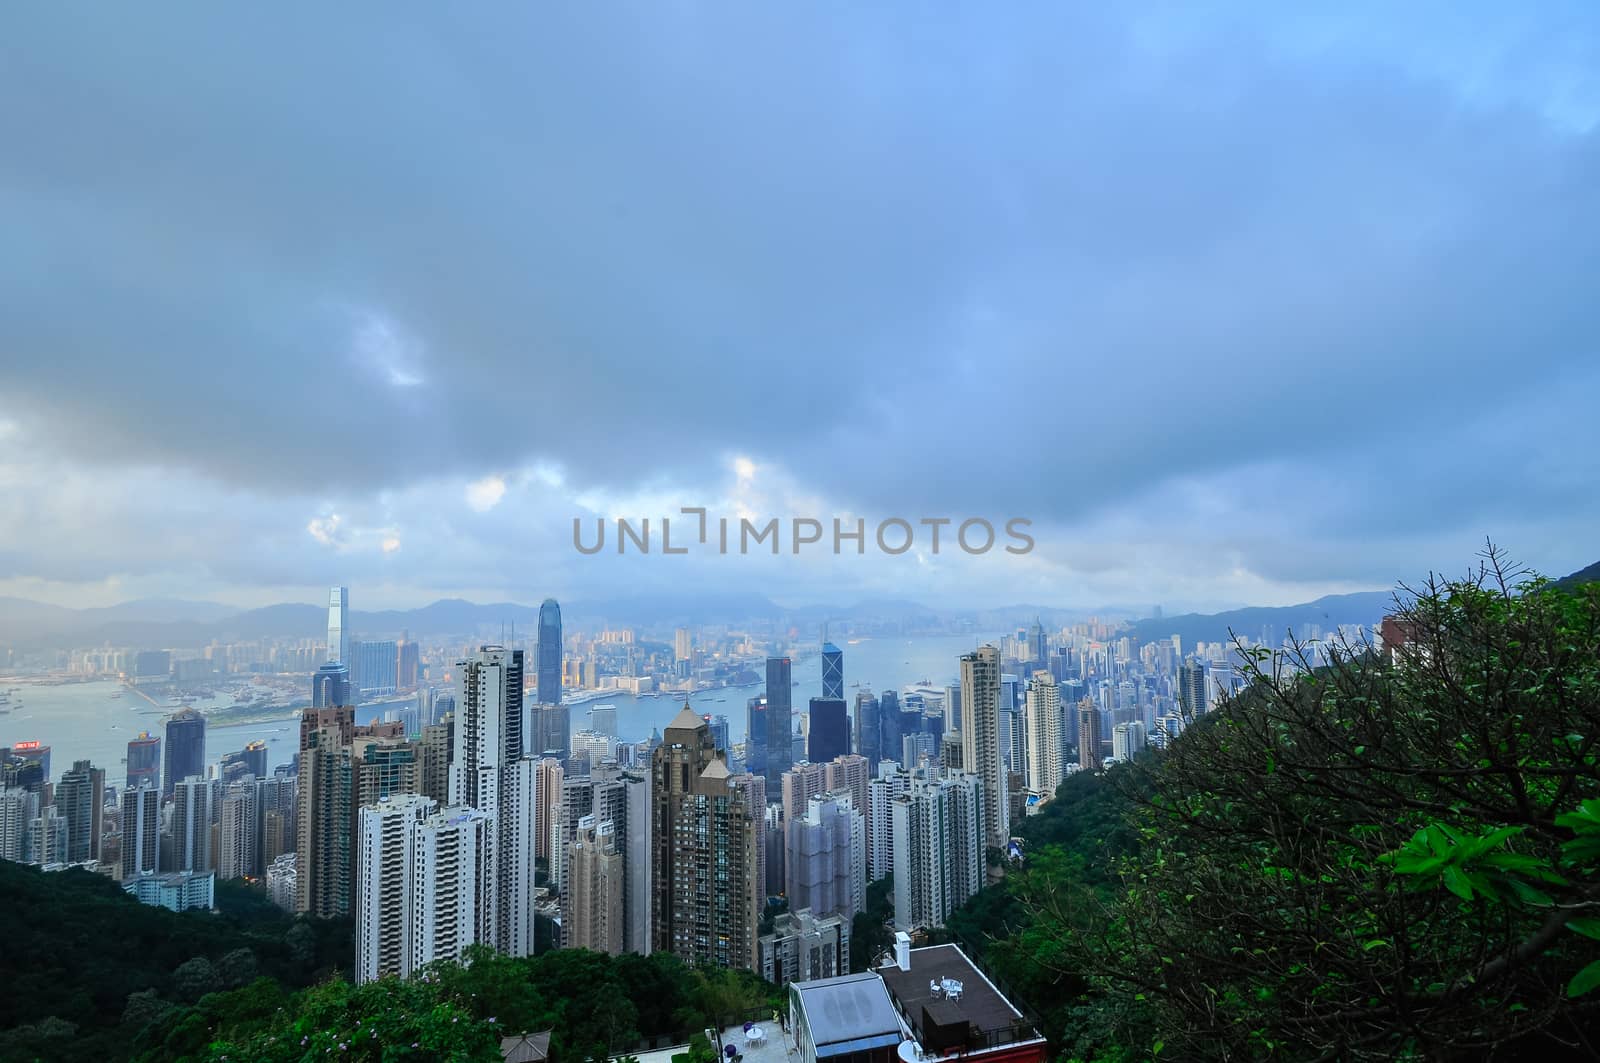 Hong Kong Island from Victoria Peak Park, China